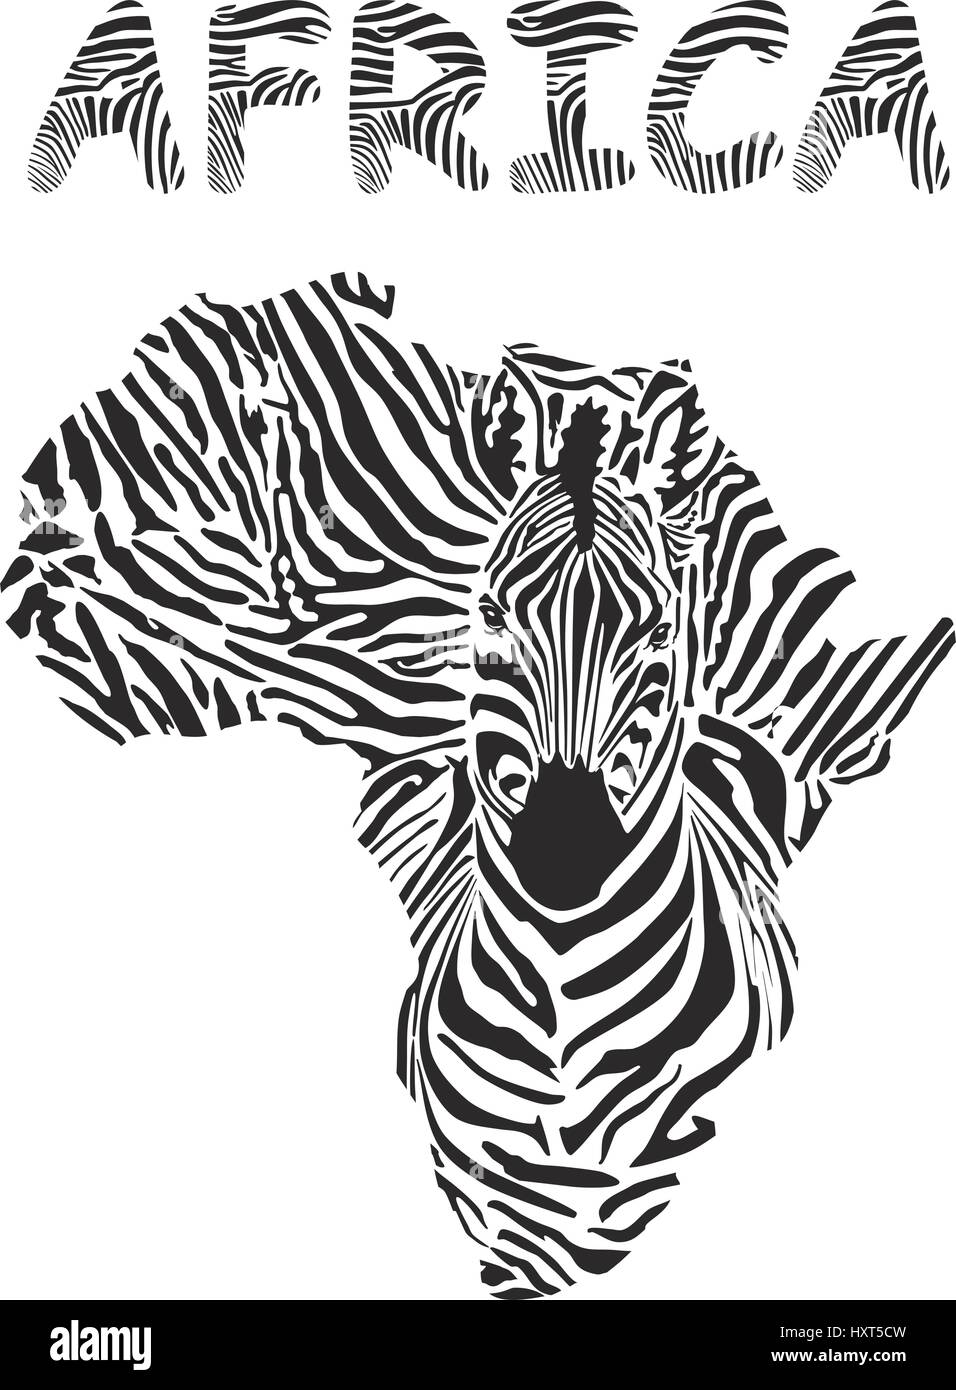 Silueta de cebra y África Continente Ilustración del Vector